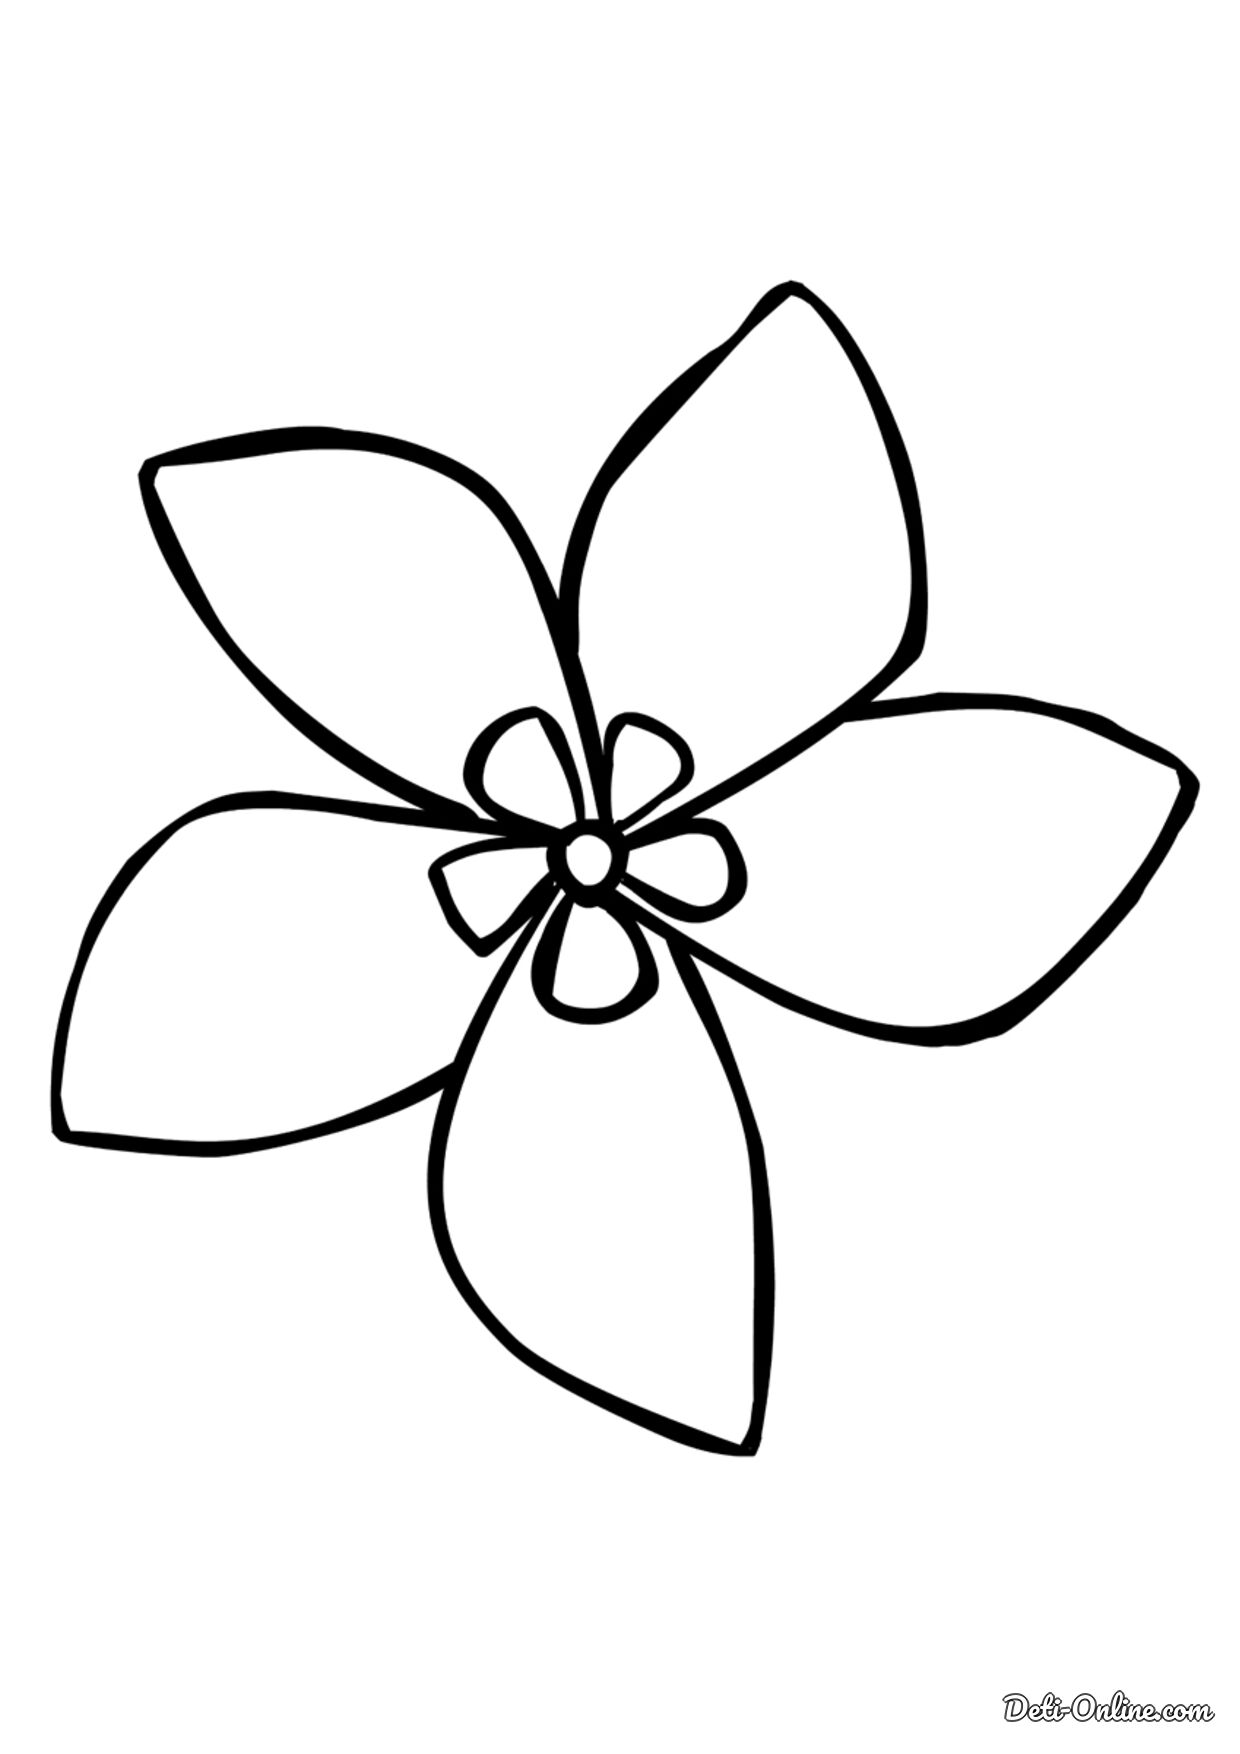 Раскраска Цветок жасмин распечатать или скачать